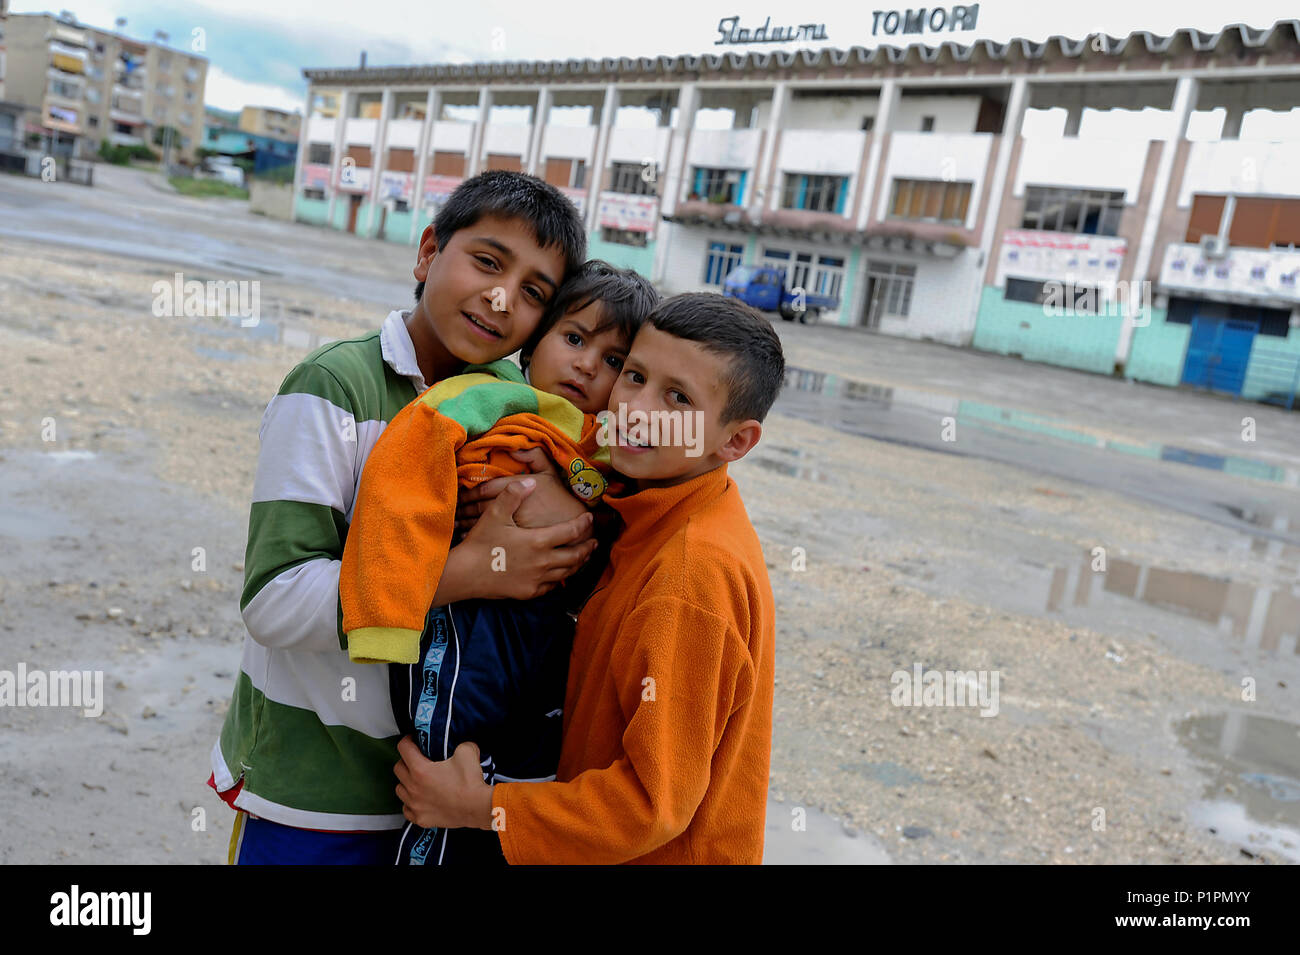 Berat, Albania, children posing in front of Tomori Stadium Stock Photo